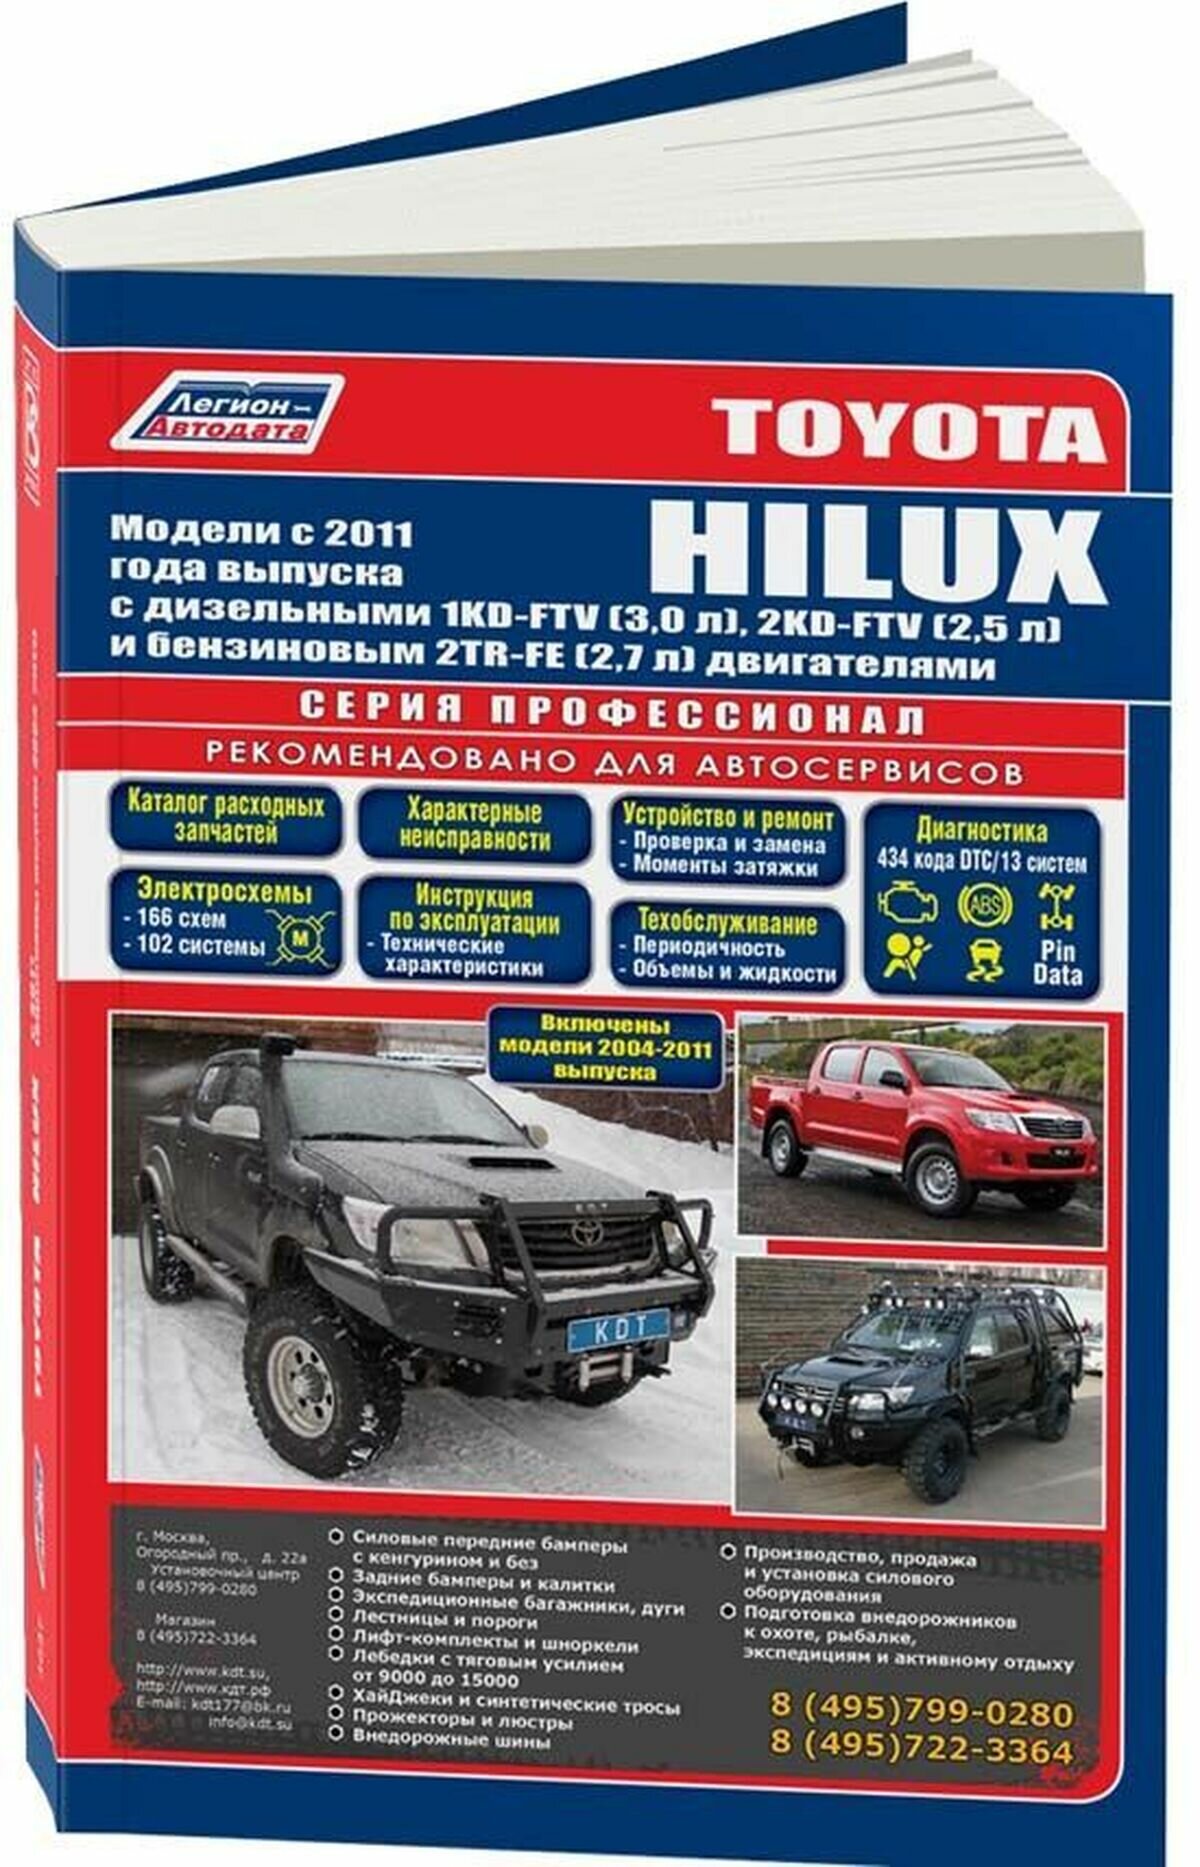 Toyota HILUX. Модели c 2011 года выпуска с дизельными 1KD-FTV (3,0 л.), 2KD-FTV (2,5 л.) и бензиновым 2TR-FE (2,7 л.) двигателями. Включены модели 2004-2011 годов выпуска. Руководство по ремонту и тех - фото №1